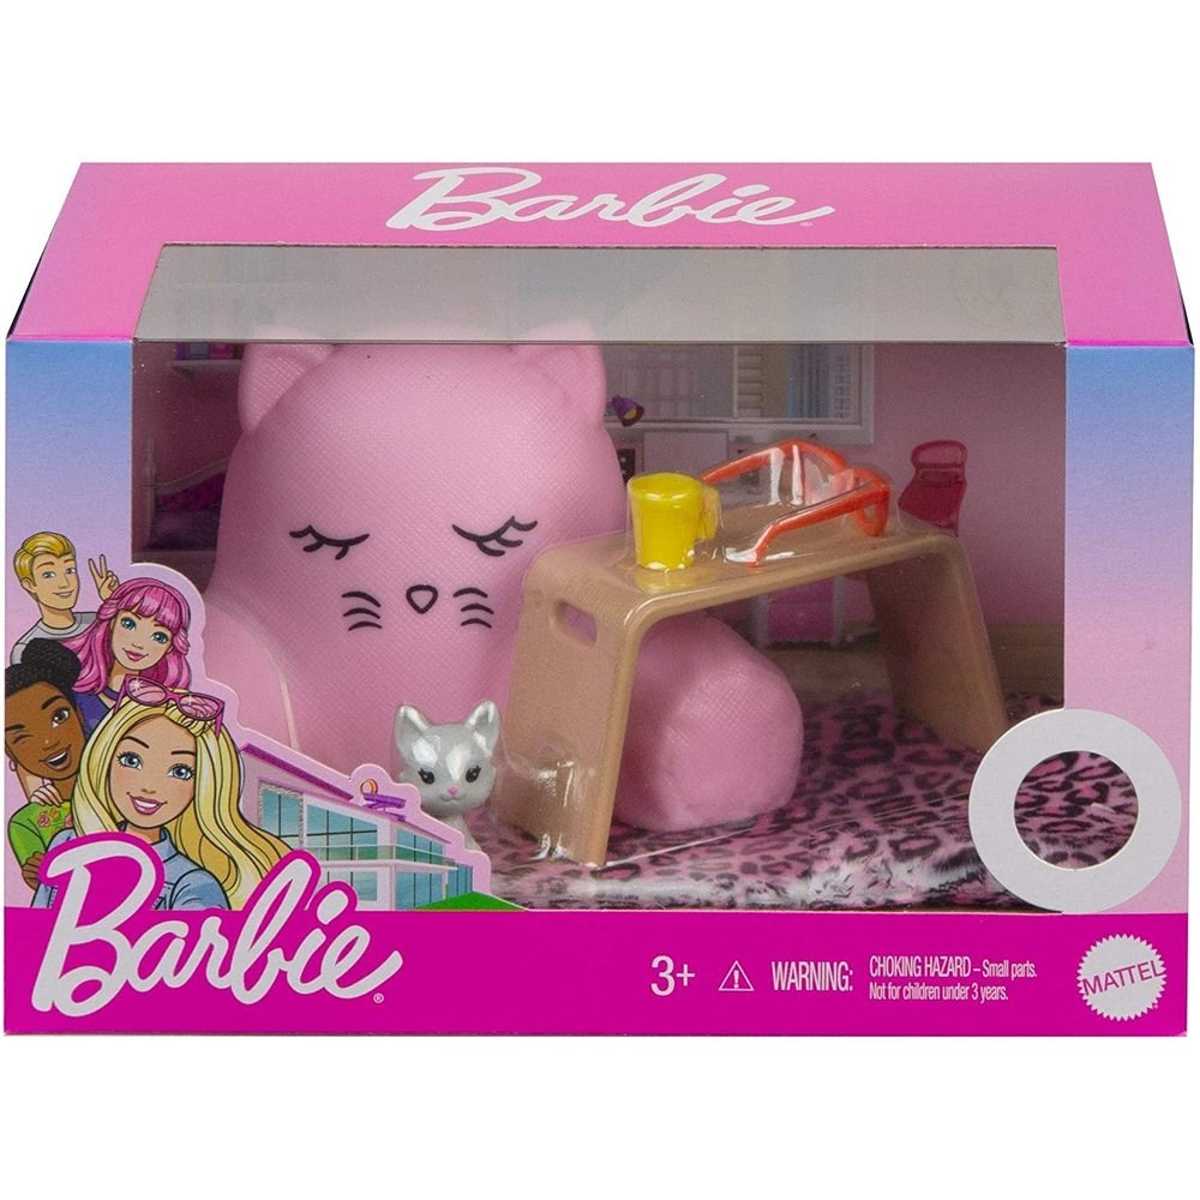 boneca-barbie-moveis-e-acessorios-mattel-grg56-1.jpg